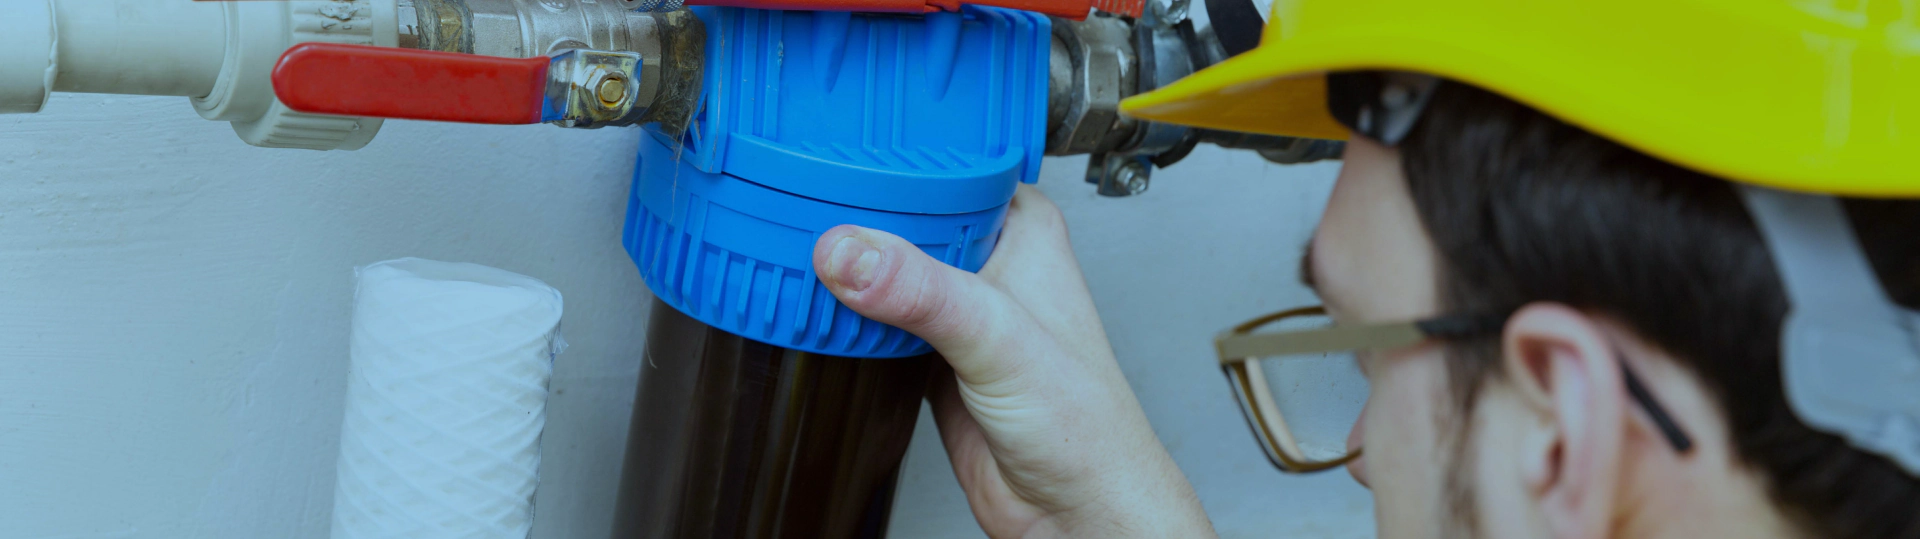 water filter repair